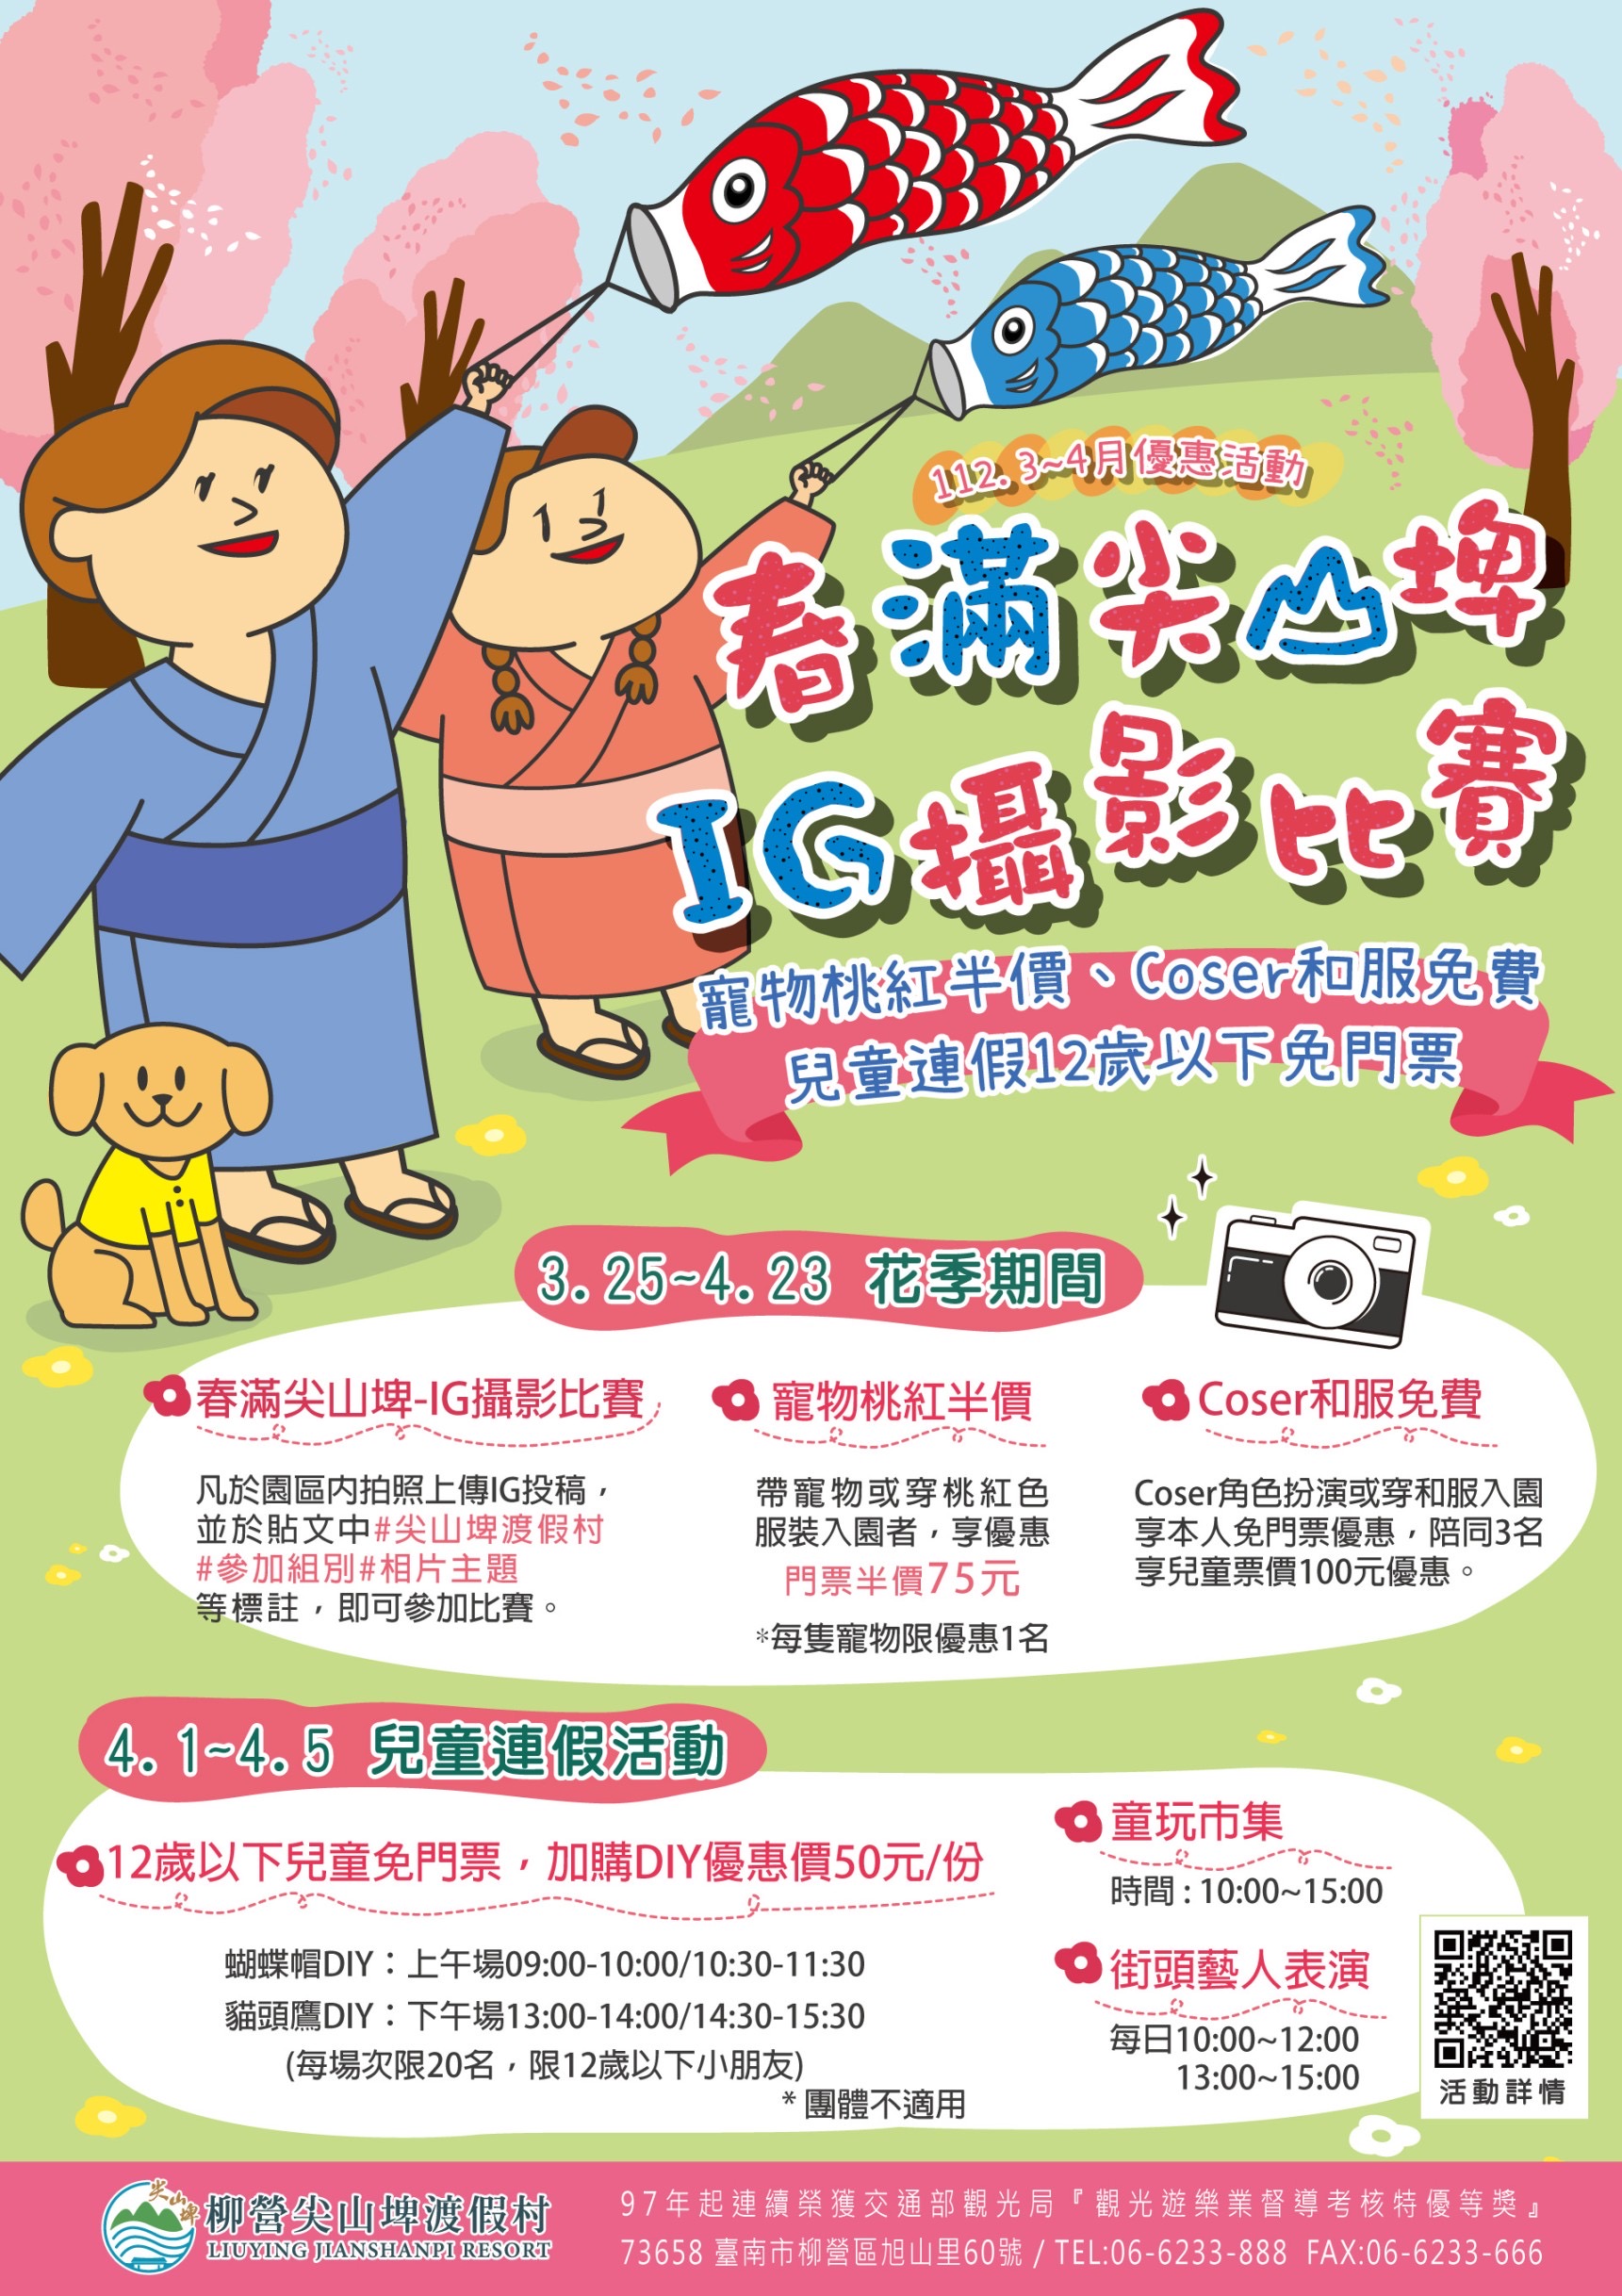 清明連假期間 台南市遊樂業推出兒童優惠活動